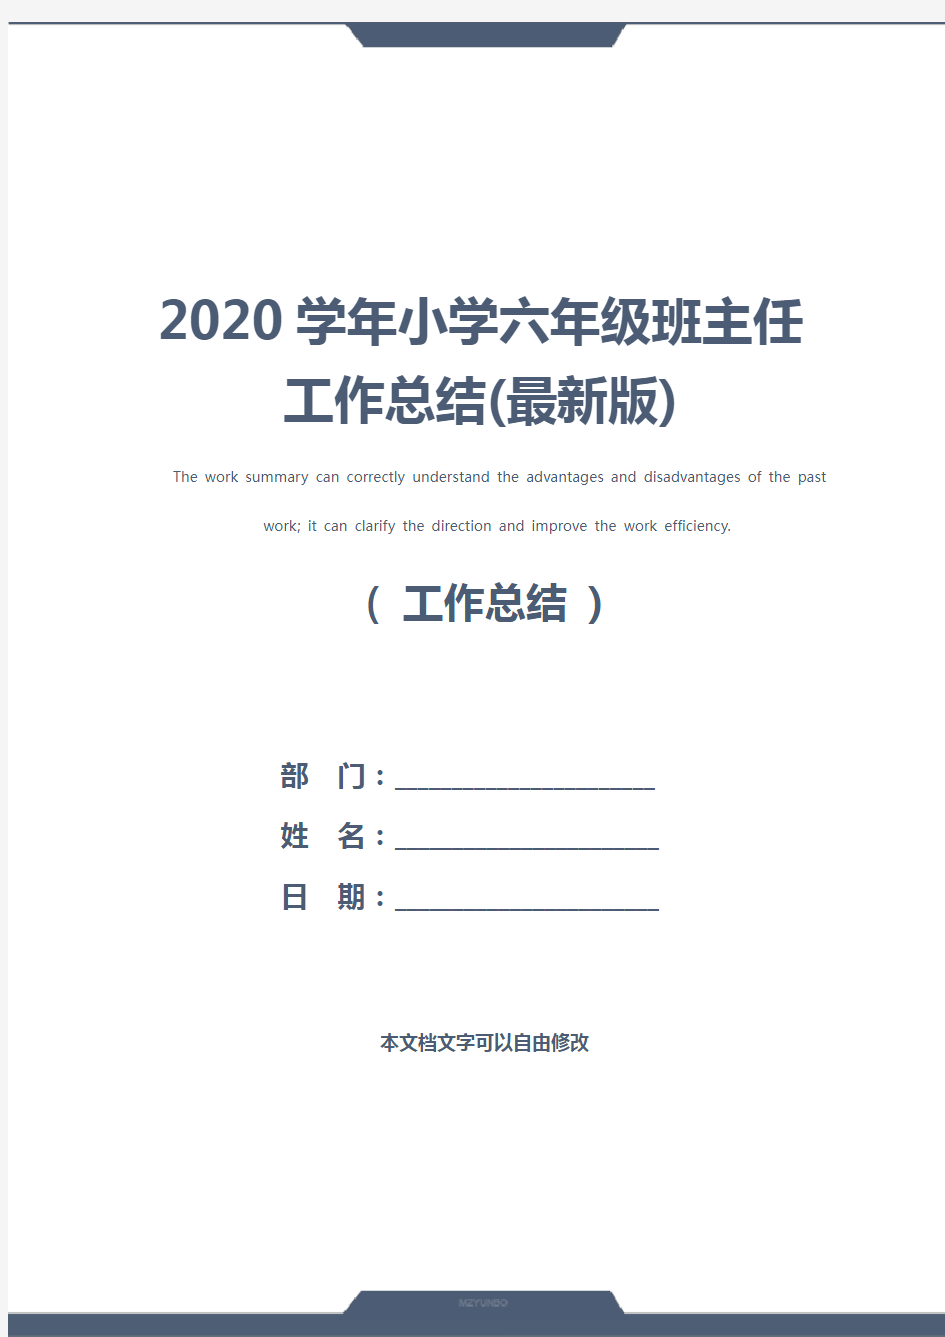 2020学年小学六年级班主任工作总结(最新版)